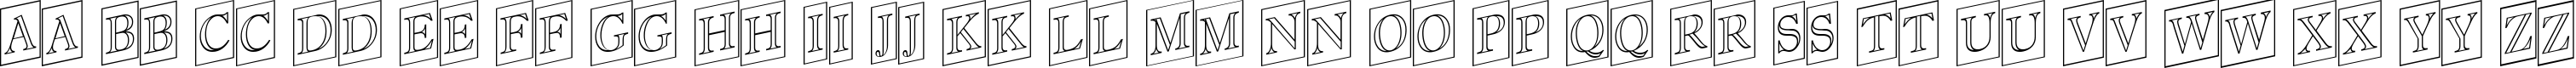 Пример написания английского алфавита шрифтом a_AntiqueTitulTrCmUpOtl